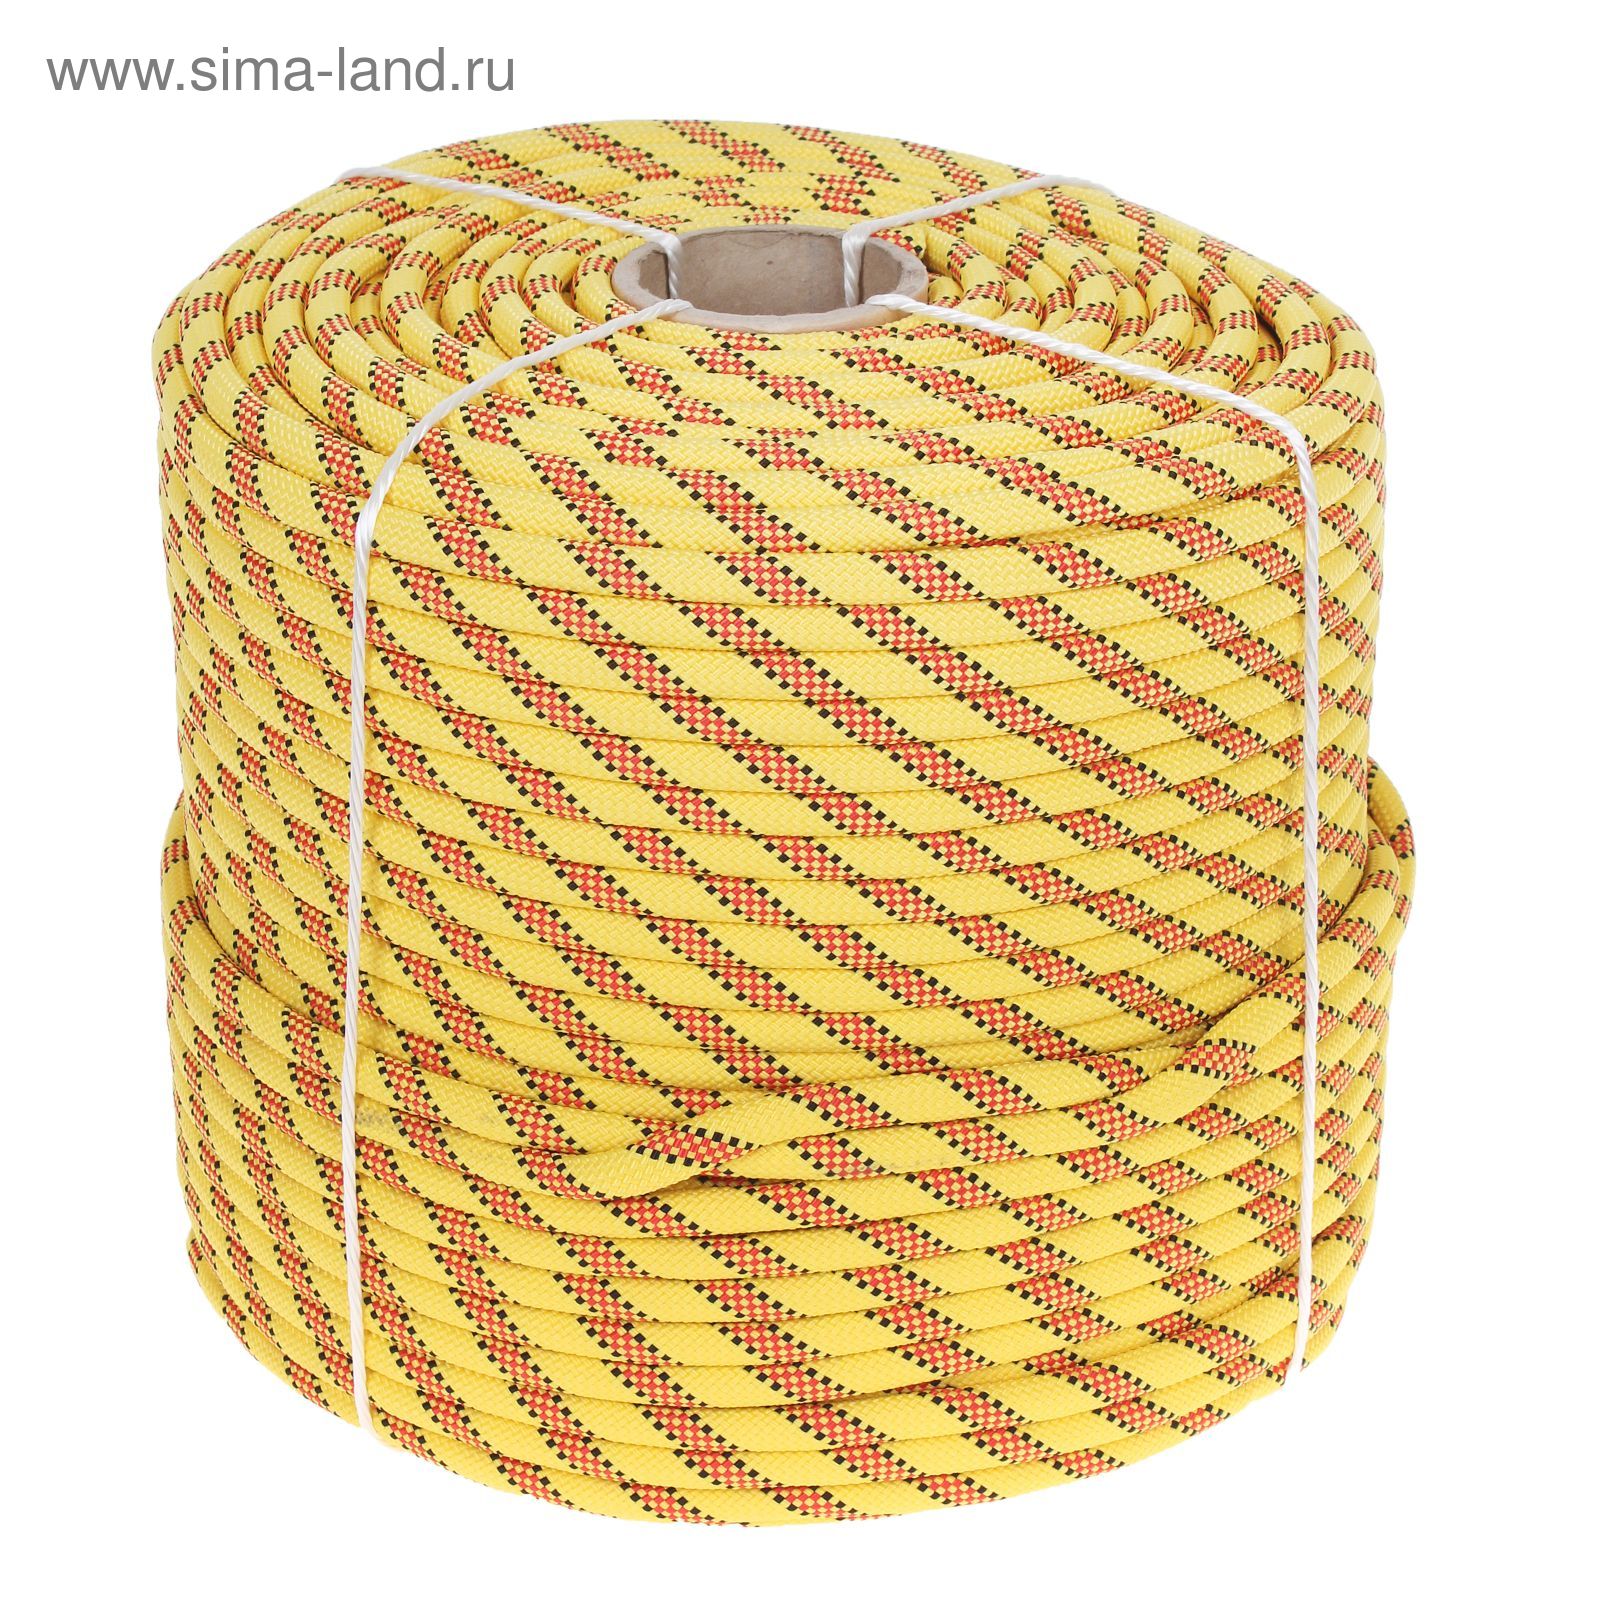 Веревка Дзержинск Янтарь, диаметр 12 мм (200 м), цвет МИКС